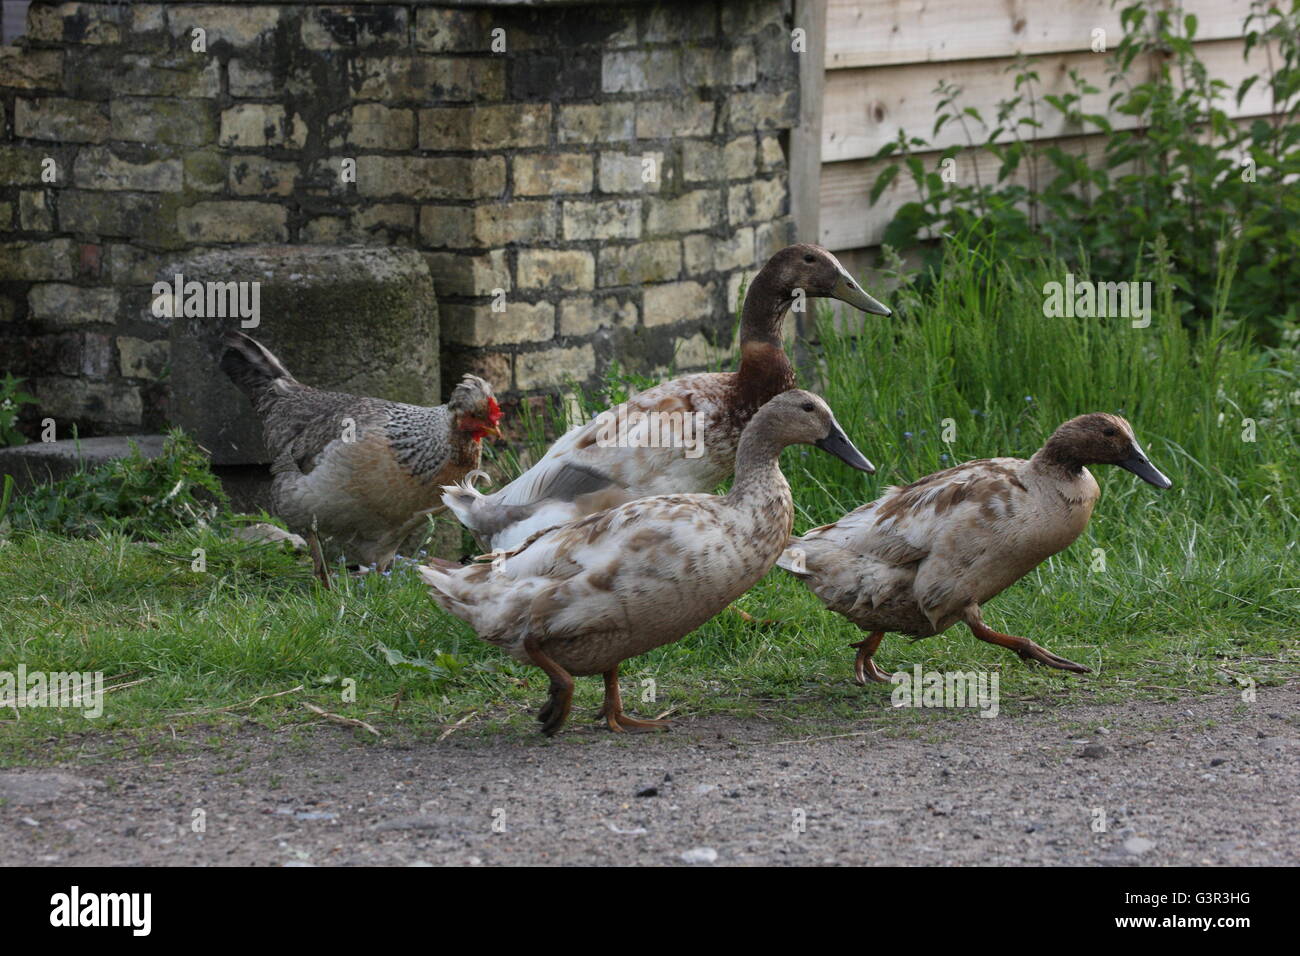 Tres patos Indian Runner,marrón drake 2 patos,rango libre de aves de granja rural,,gallina detrás Foto de stock